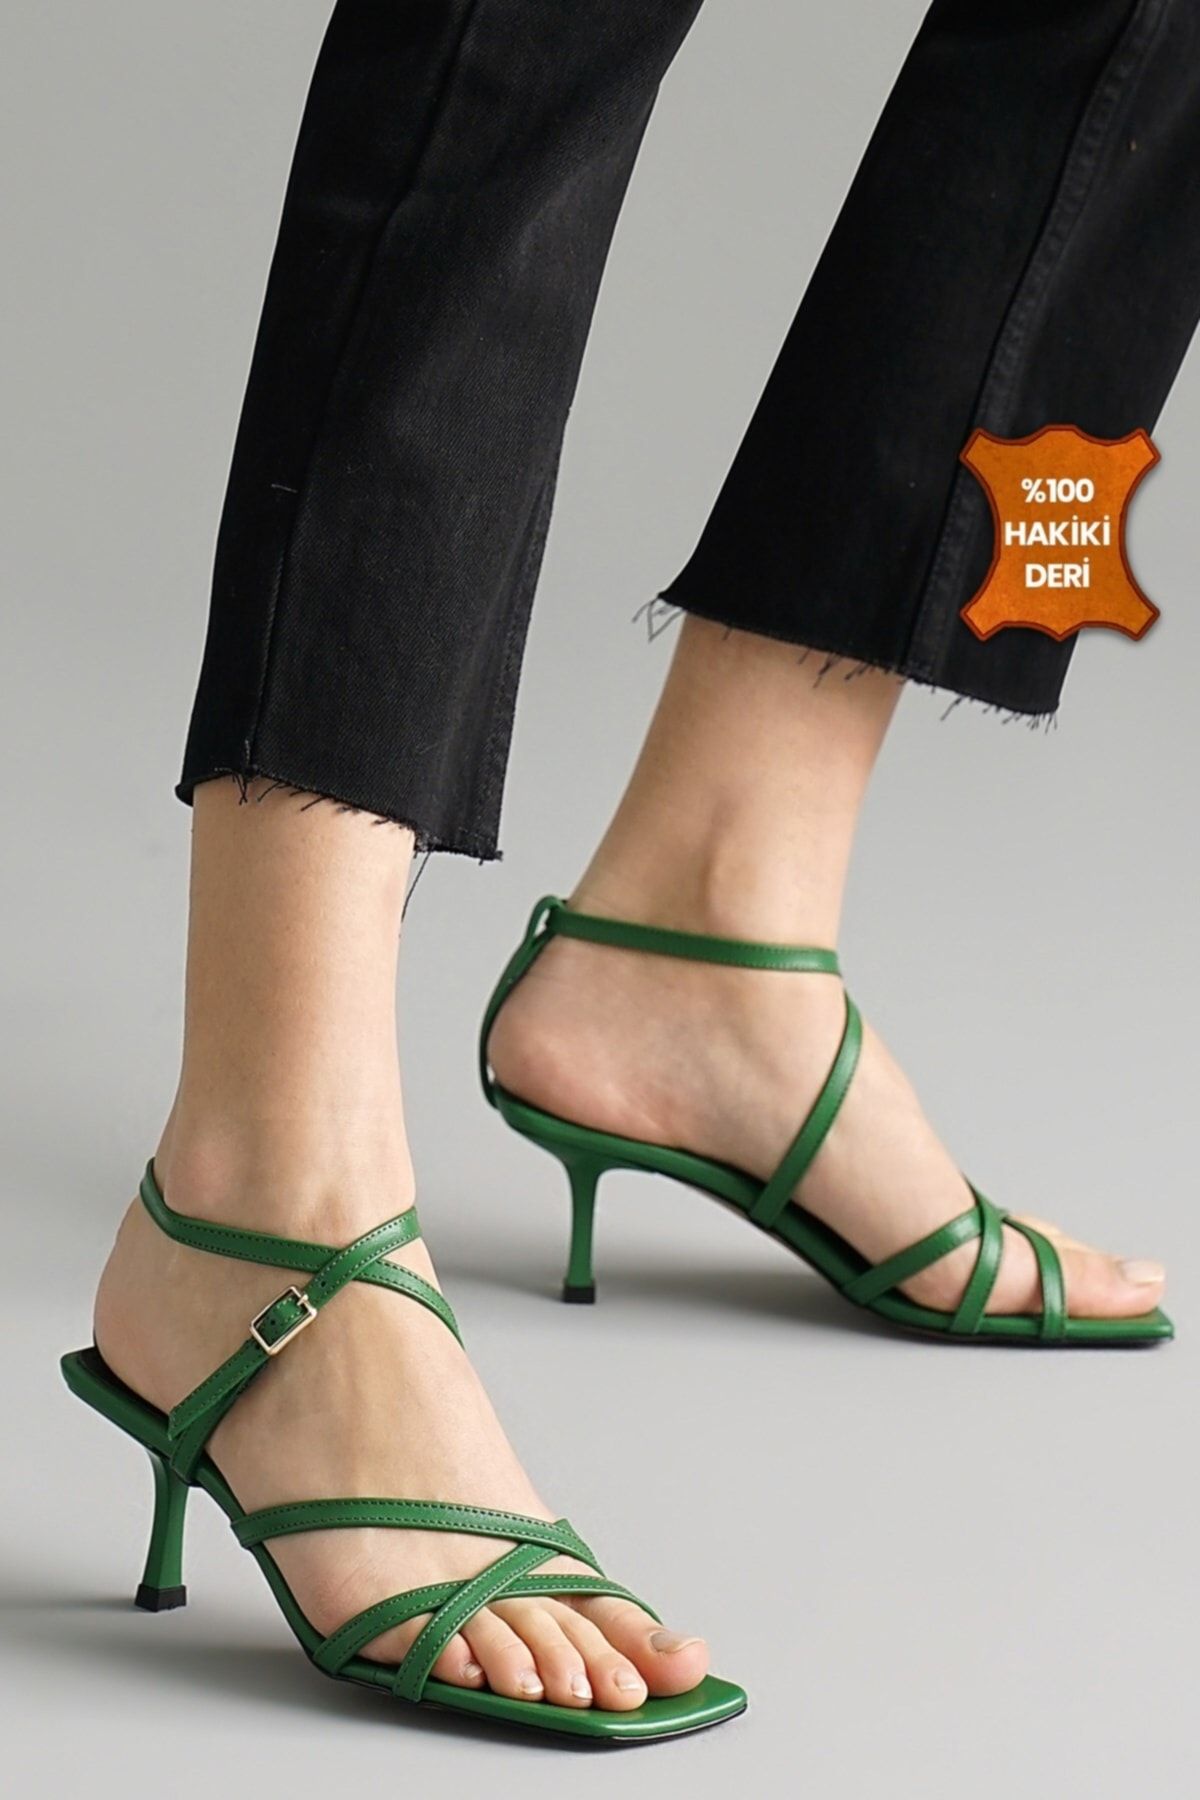 Mio Gusto Valeria Hakiki Deri Yeşil Renk Kadın Sandalet Topuklu Ayakkabı